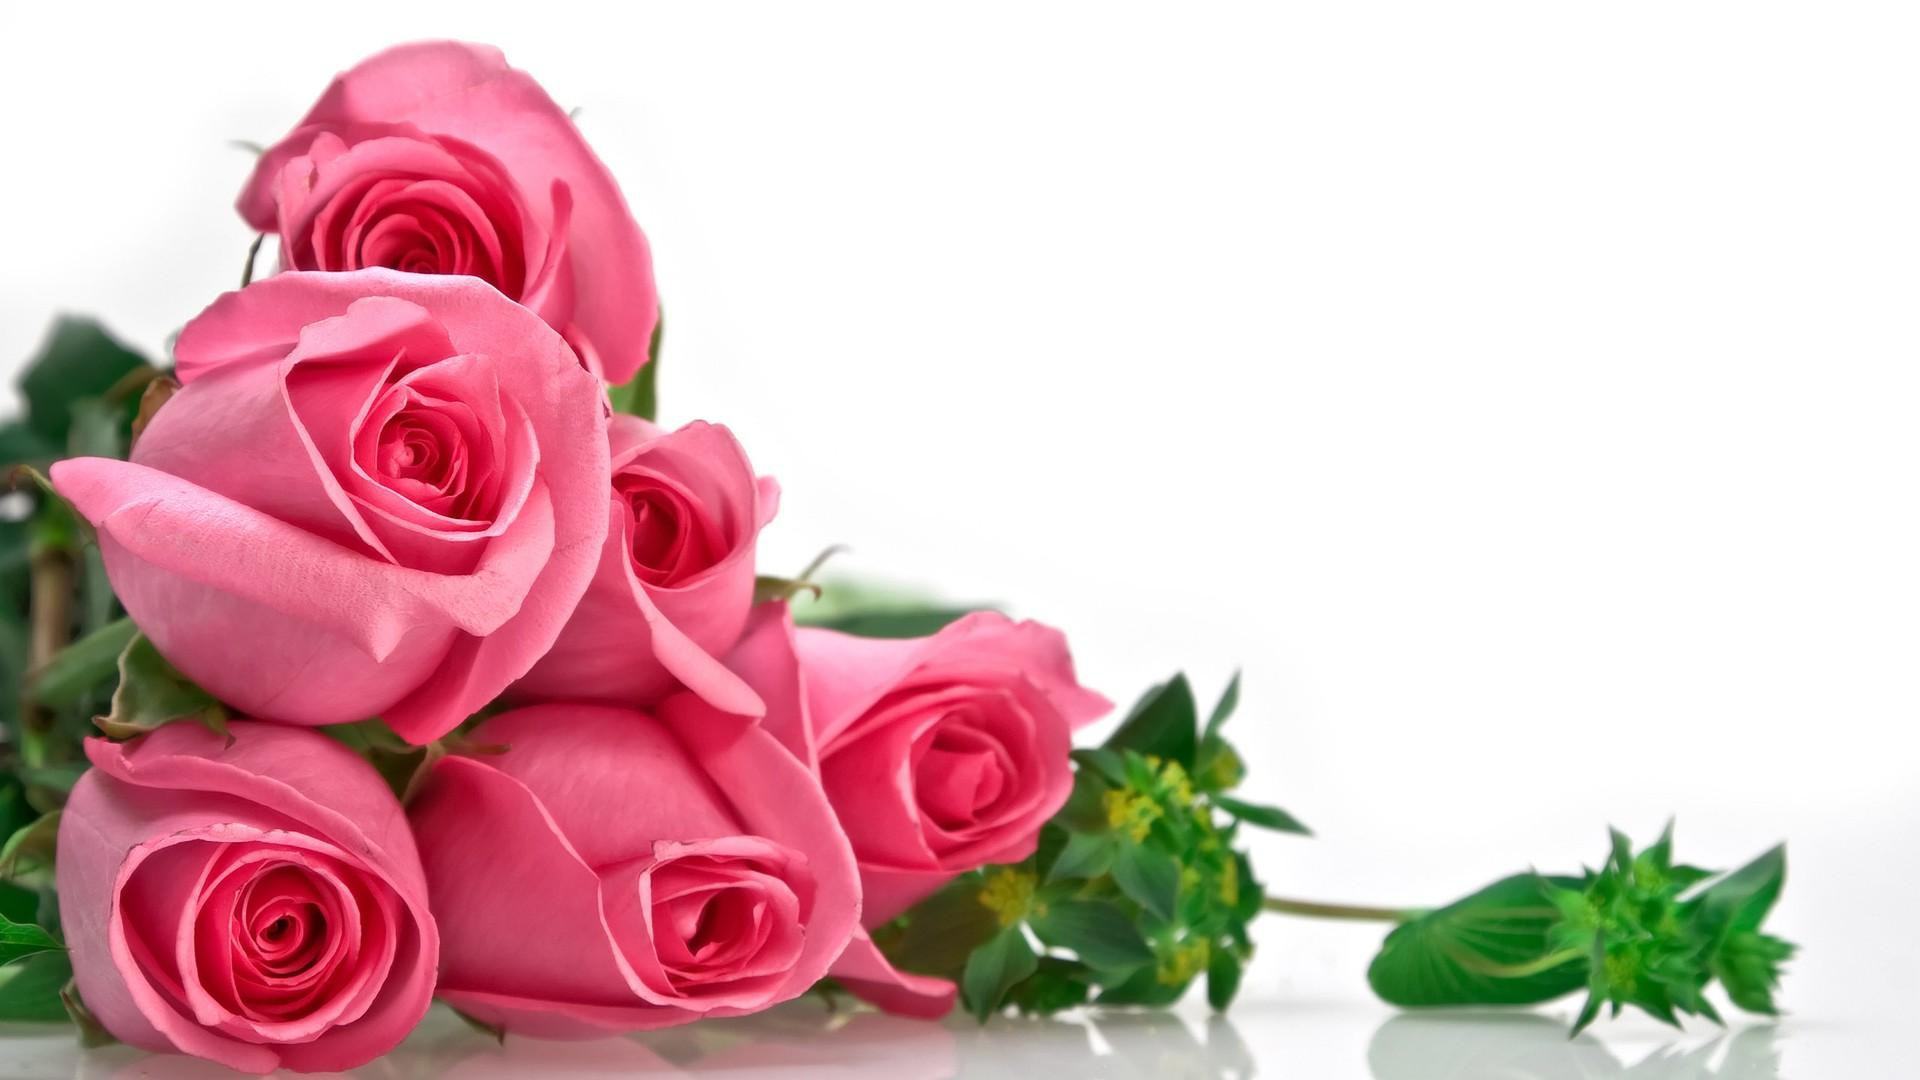 Hoa hồng luôn là biểu tượng của tình yêu và cảm xúc trong cuộc sống. Các màu sắc khác nhau của hoa hồng cũng có những ý nghĩa và thông điệp riêng. Hãy xem hình ảnh để khám phá những ý nghĩa tinh tế mà những chùm hoa hồng mang lại.